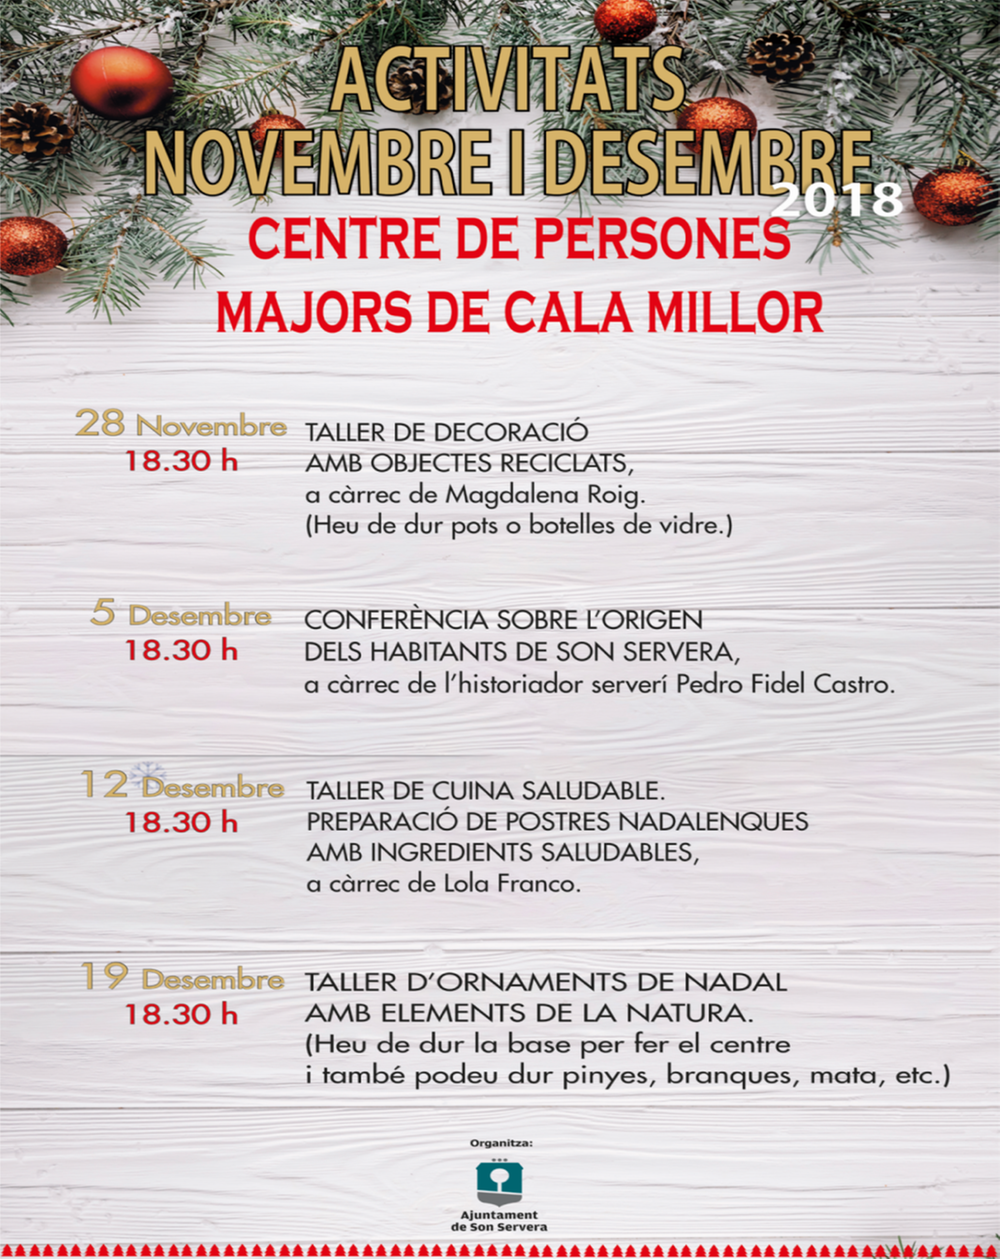 Actividades tercera edad Cala Millor: noviembre y diciembre 2018